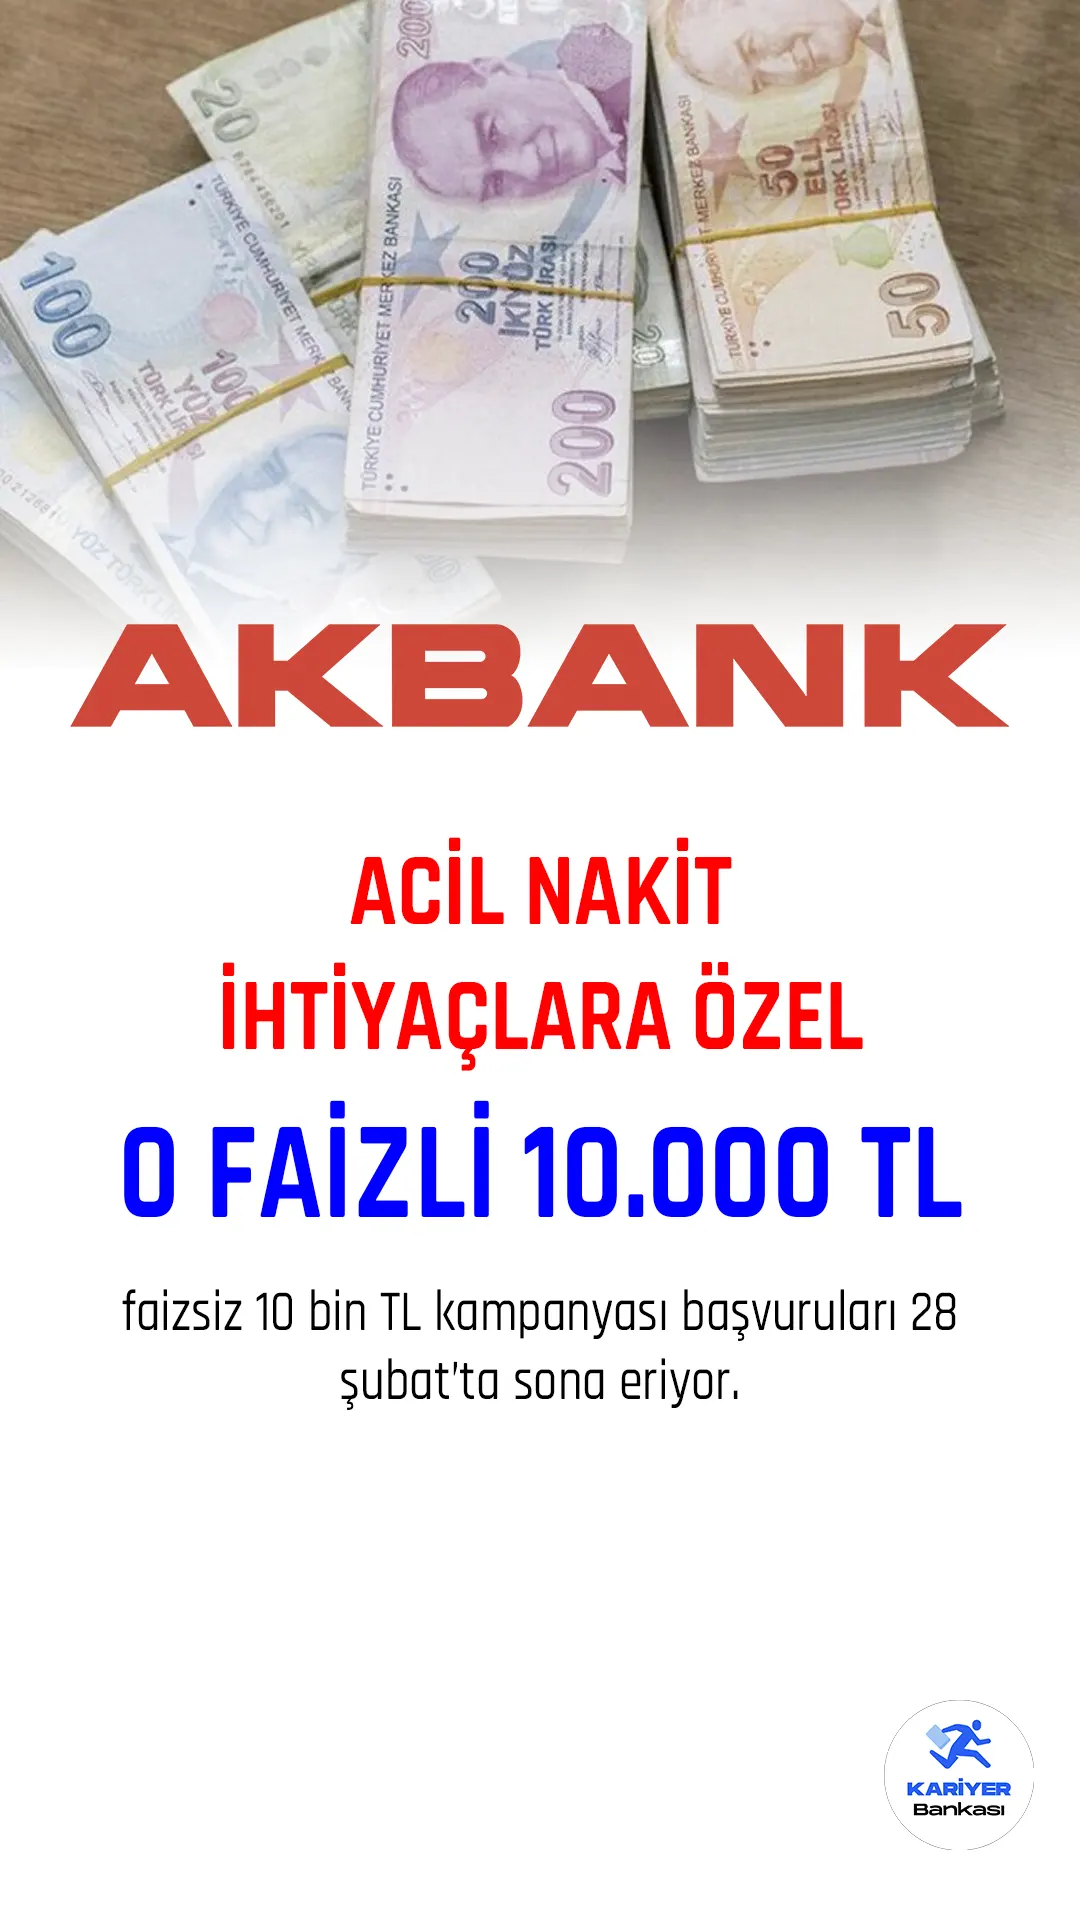 Akbank 0 faizli 10 bin TL kampanyası başvuruları sürüyor.